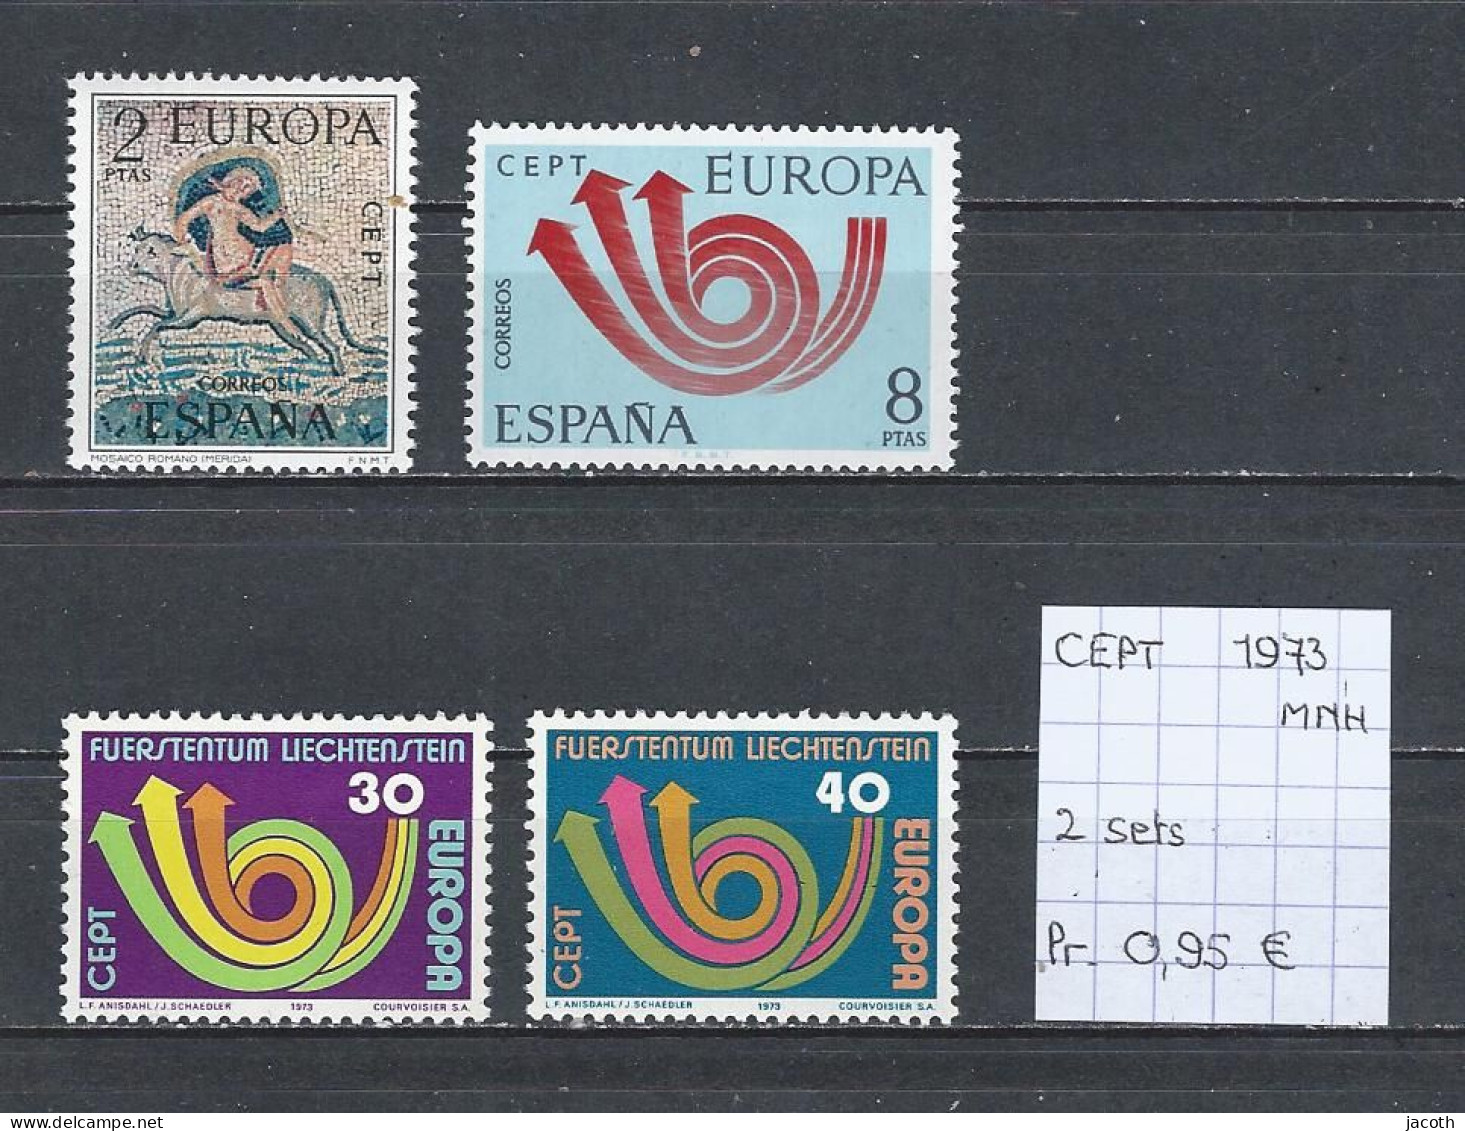 (TJ) Europa CEPT 1973 - 2 Sets (postfris/neuf/MNH) - 1973